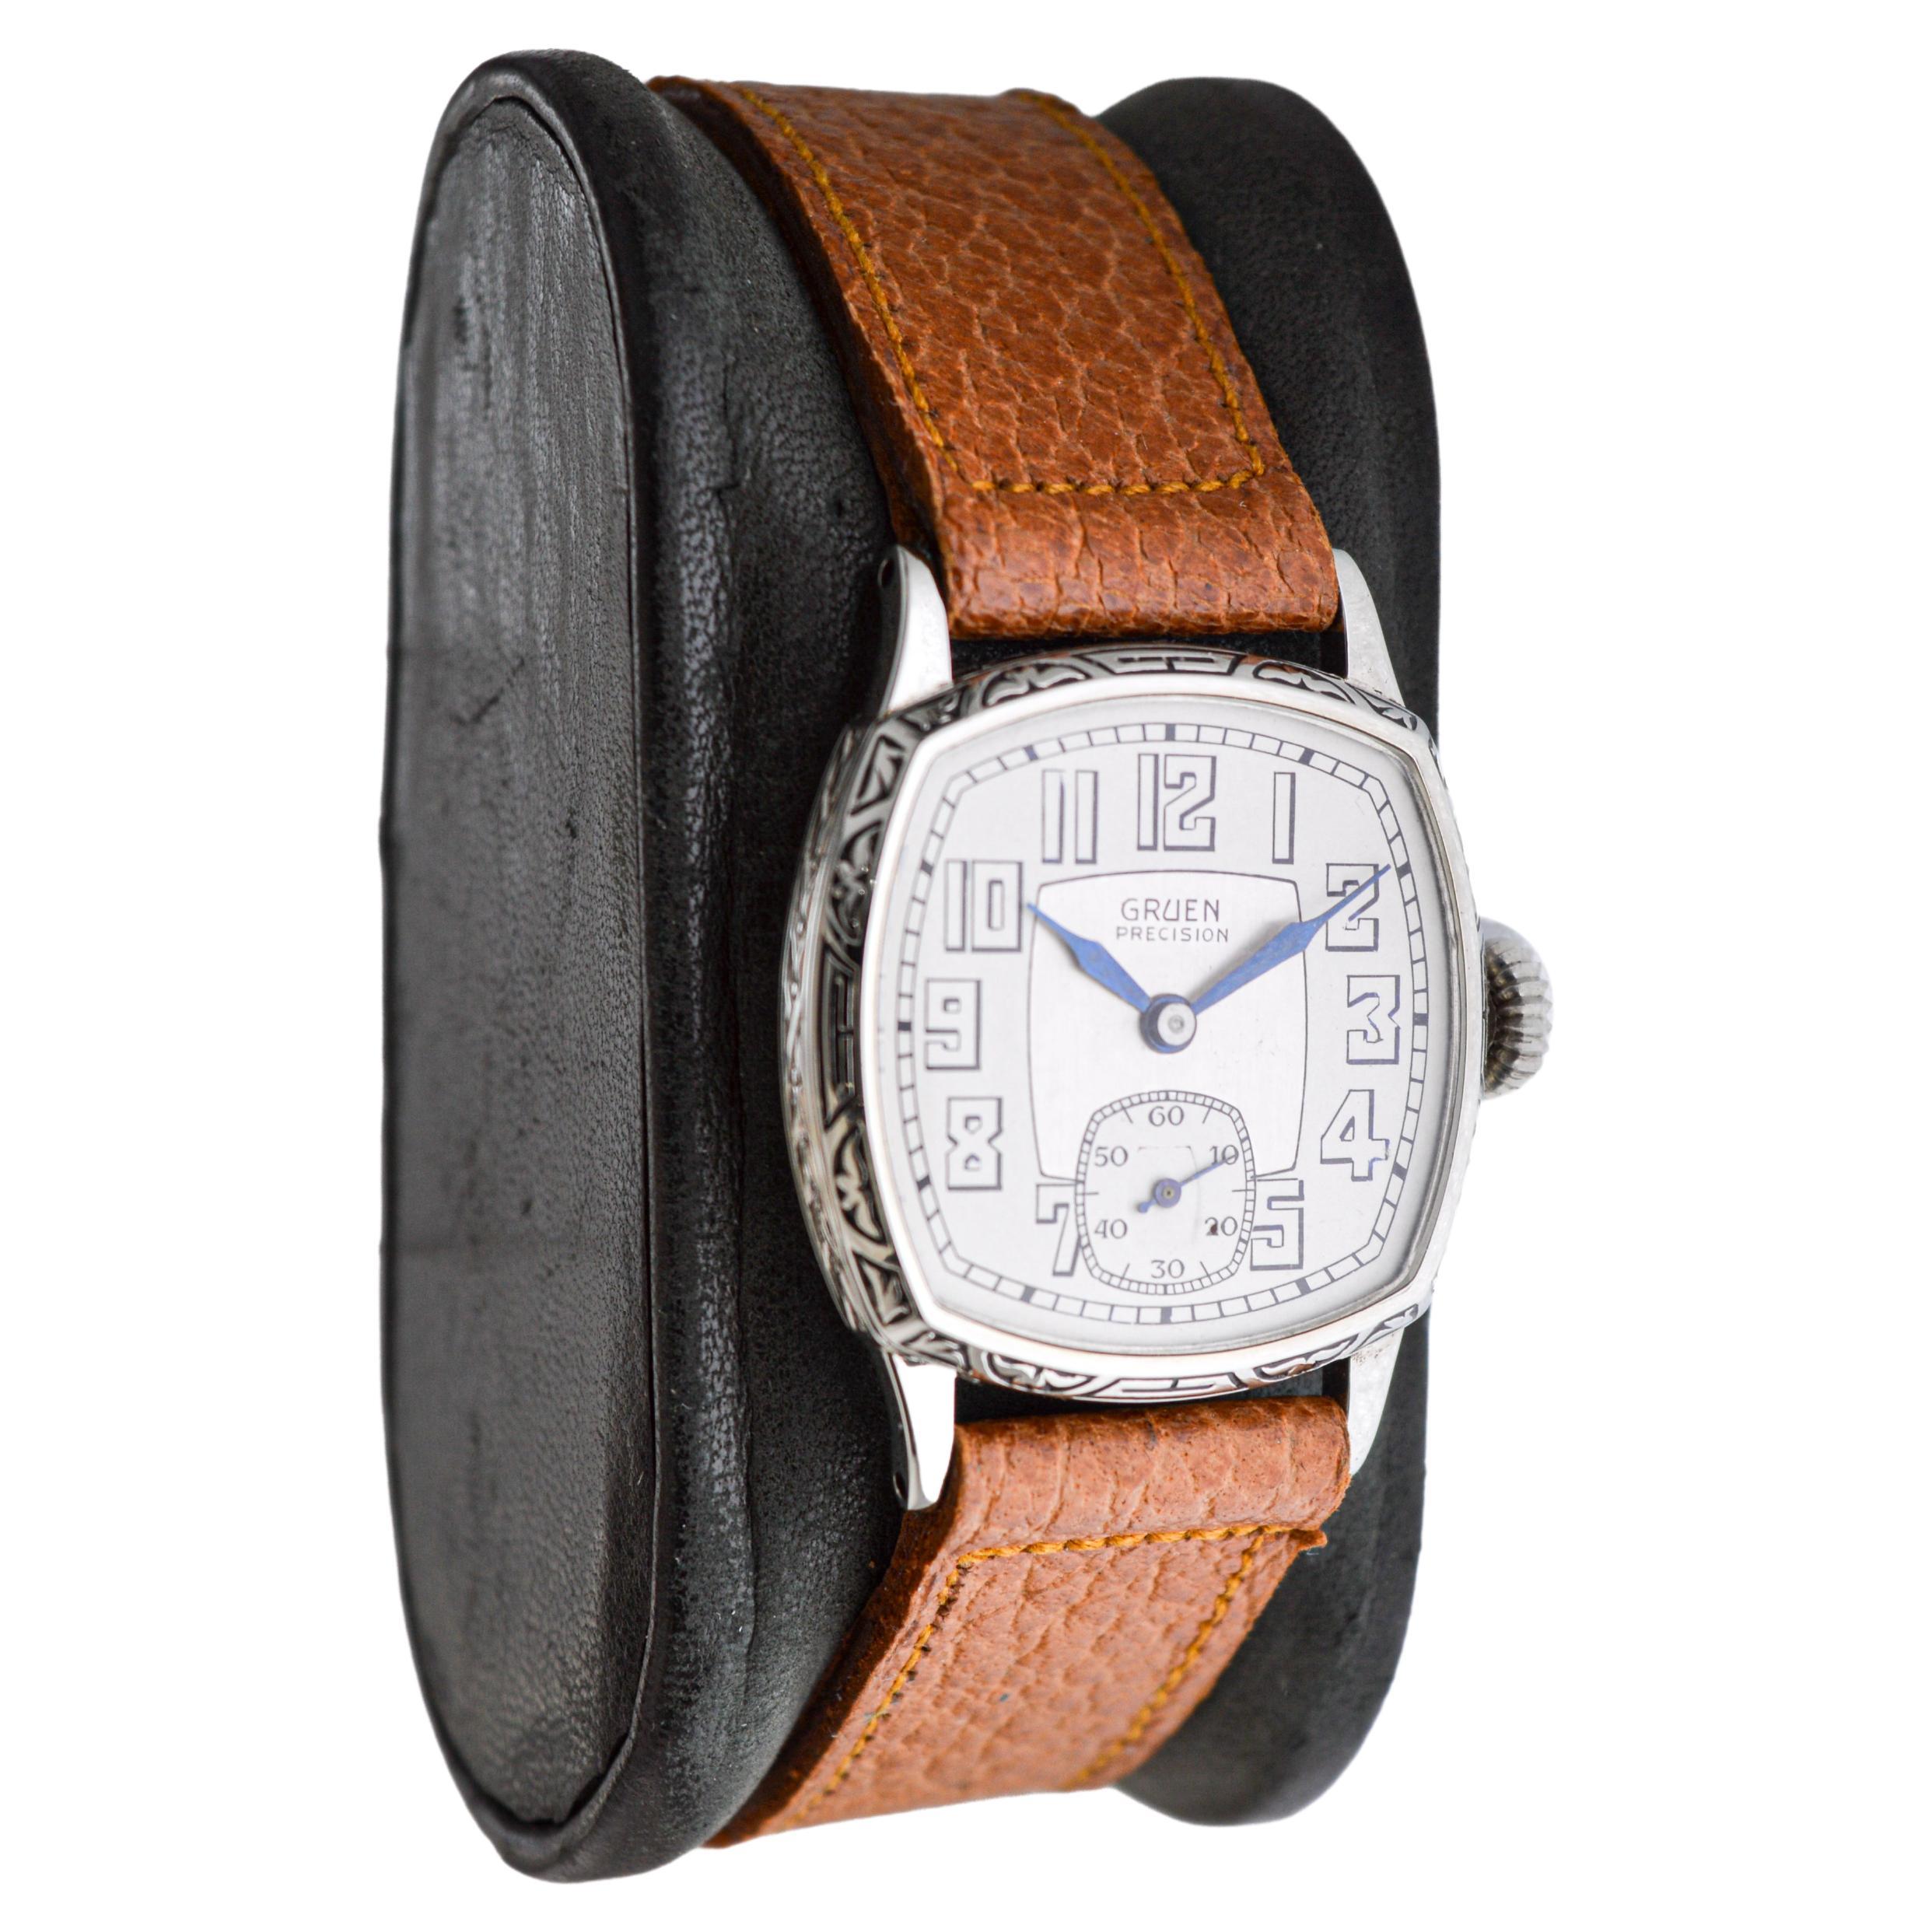 FABRIK / HAUS: Gruen Watch Company
STIL / REFERENZ: Art Deco / Kissen Form
METALL / MATERIAL: Weißgold-gefüllt
CIRCA / JAHR: 1931
ABMESSUNGEN / GRÖSSE: Länge 25mm X Breite 27mm
UHRWERK / KALIBER: Handaufzug / 15 Jewels / Kaliber 115
ZIFFERBLATT /